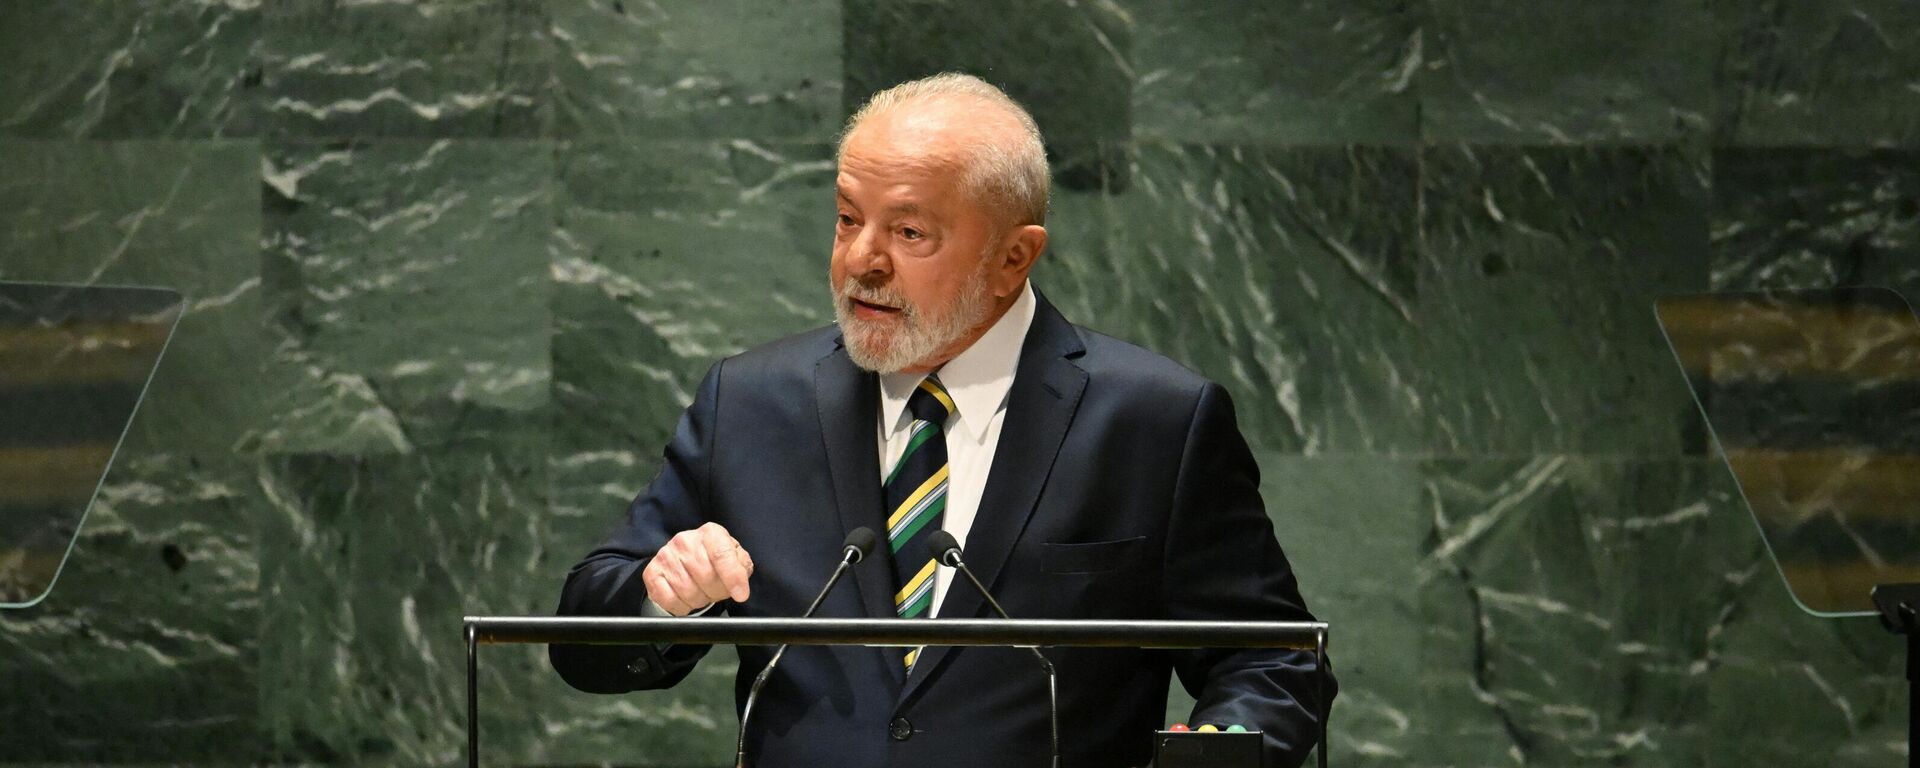 Luiz Inácio Lula da Silva, el presidente brasileño, pronuncia un discurso ante la 78ª Asamblea General de las Naciones Unidas en la sede de la ONU en Nueva York el 19 de septiembre de 2023 - Sputnik Mundo, 1920, 19.09.2023